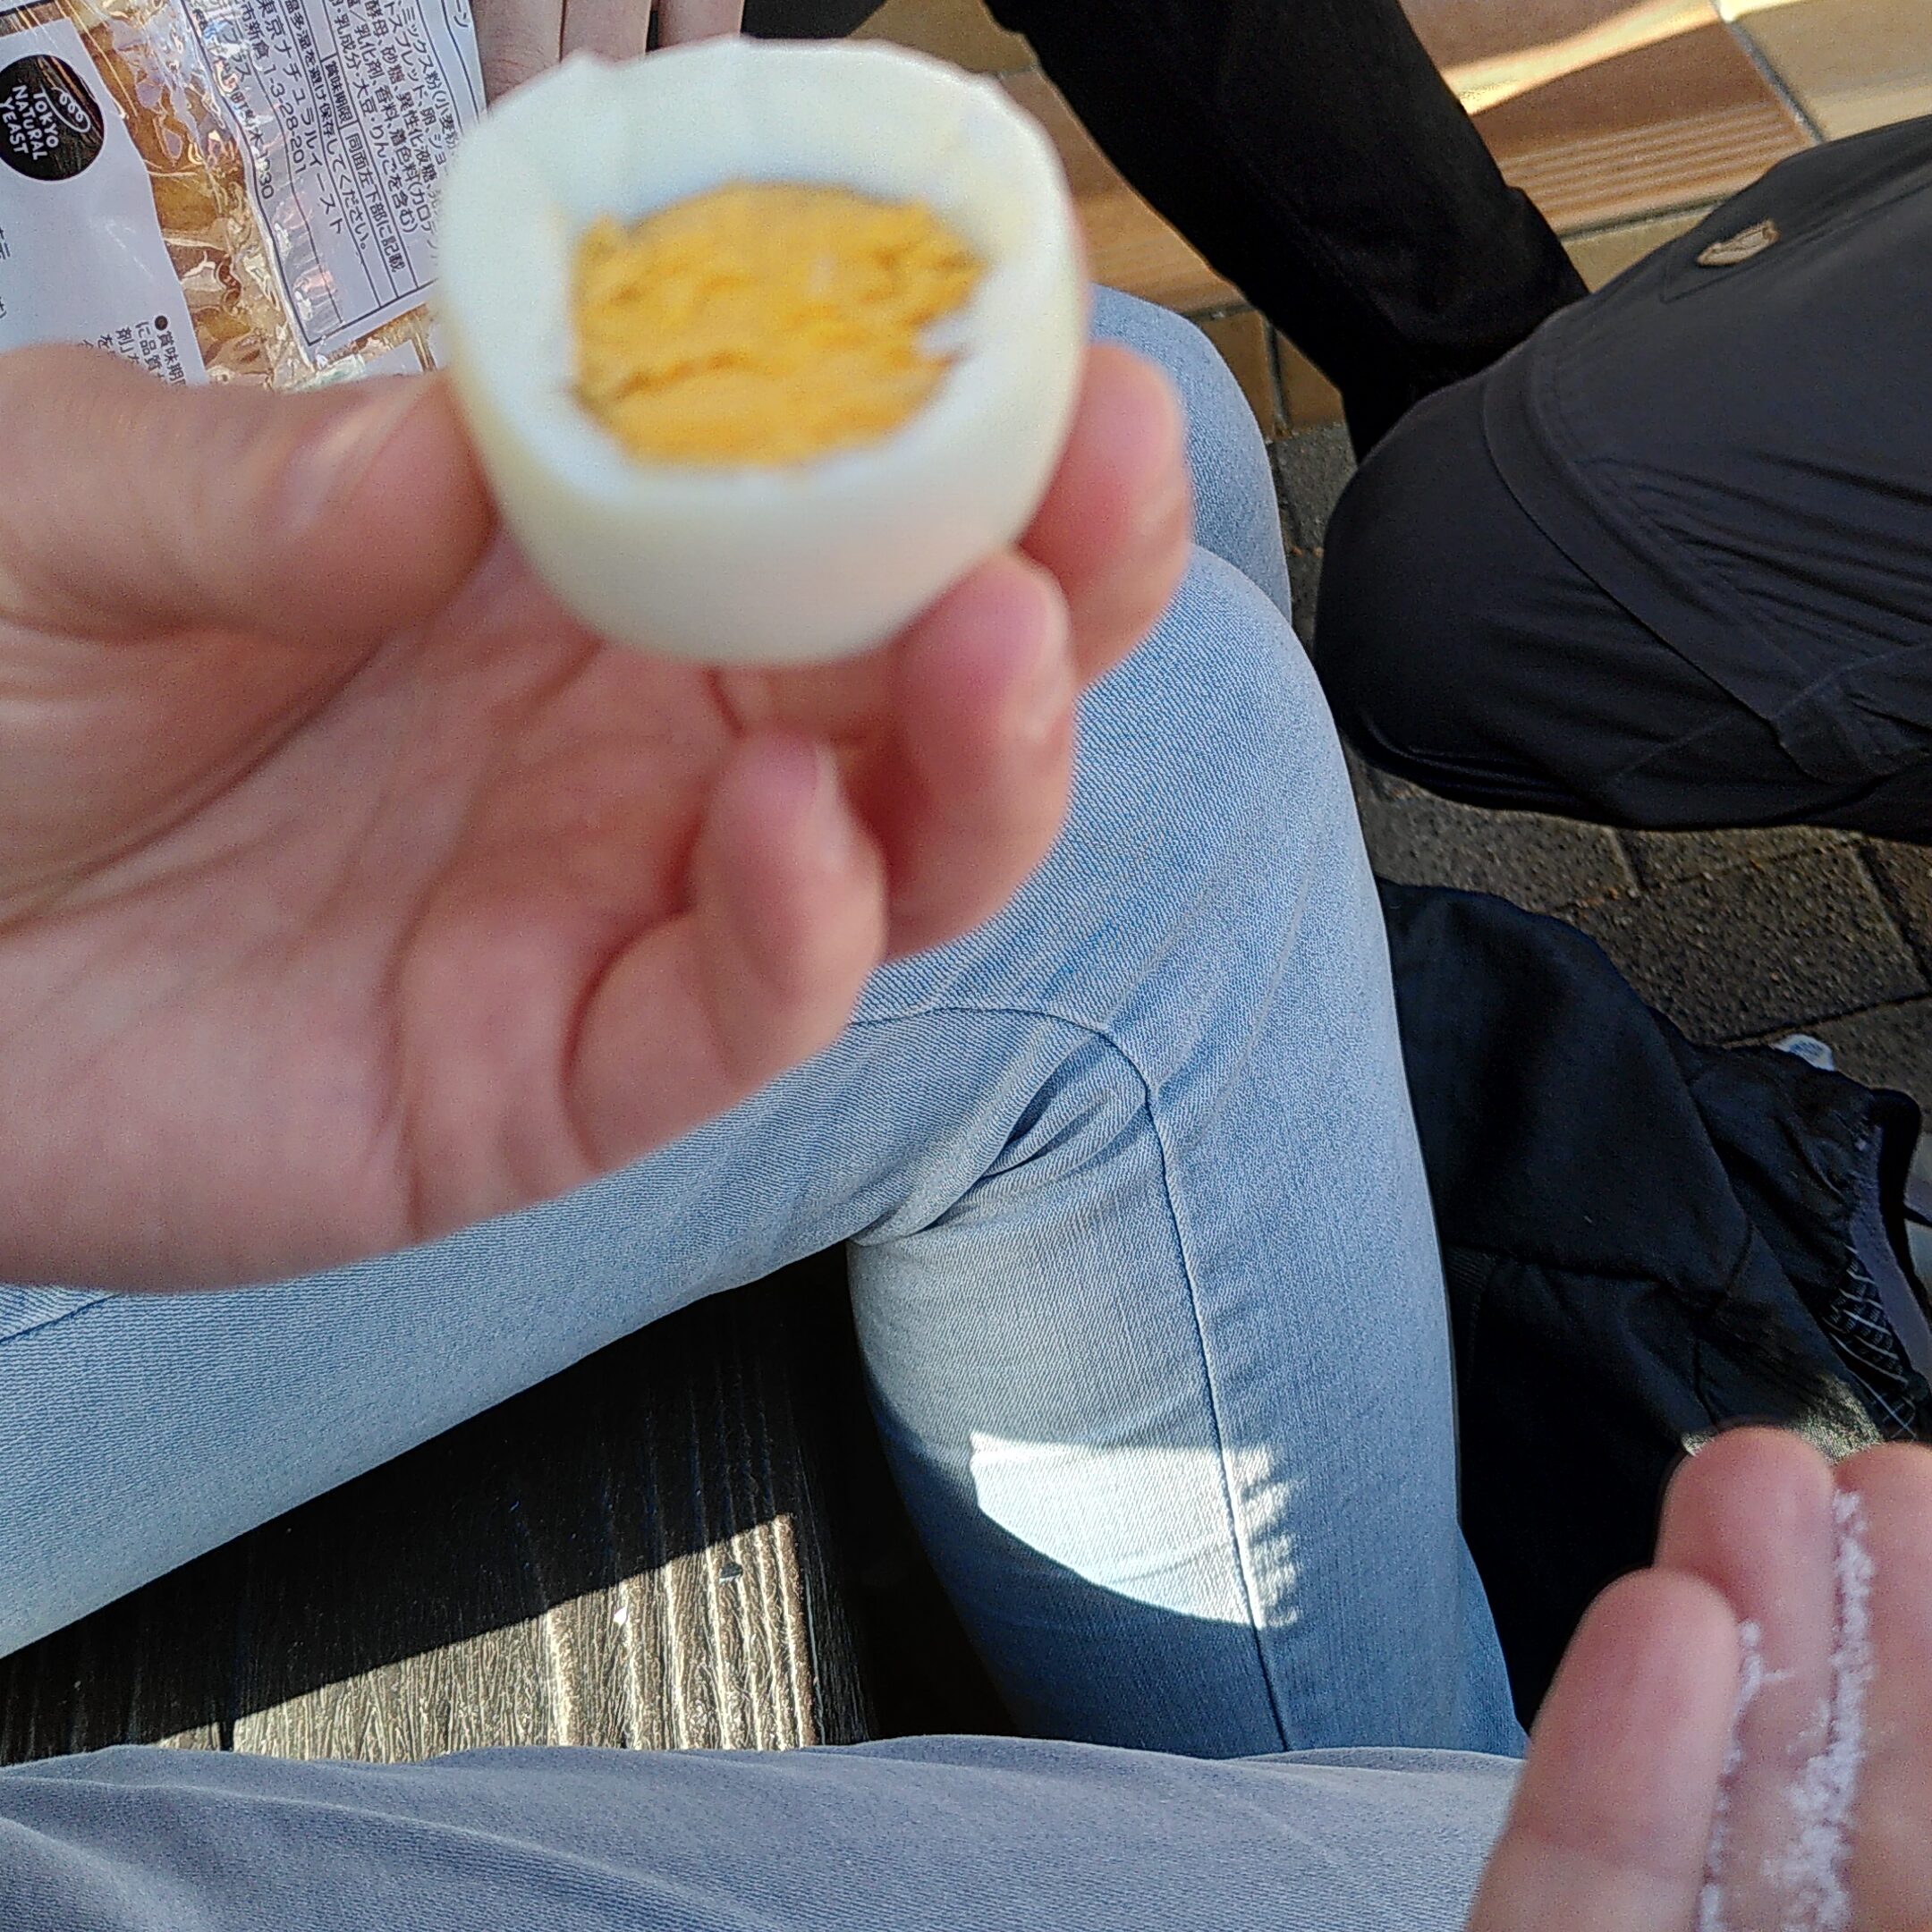 Eine Hand hält ein gepelltes halbiertes Ei mit Eigelb und weißem Eiweiß.